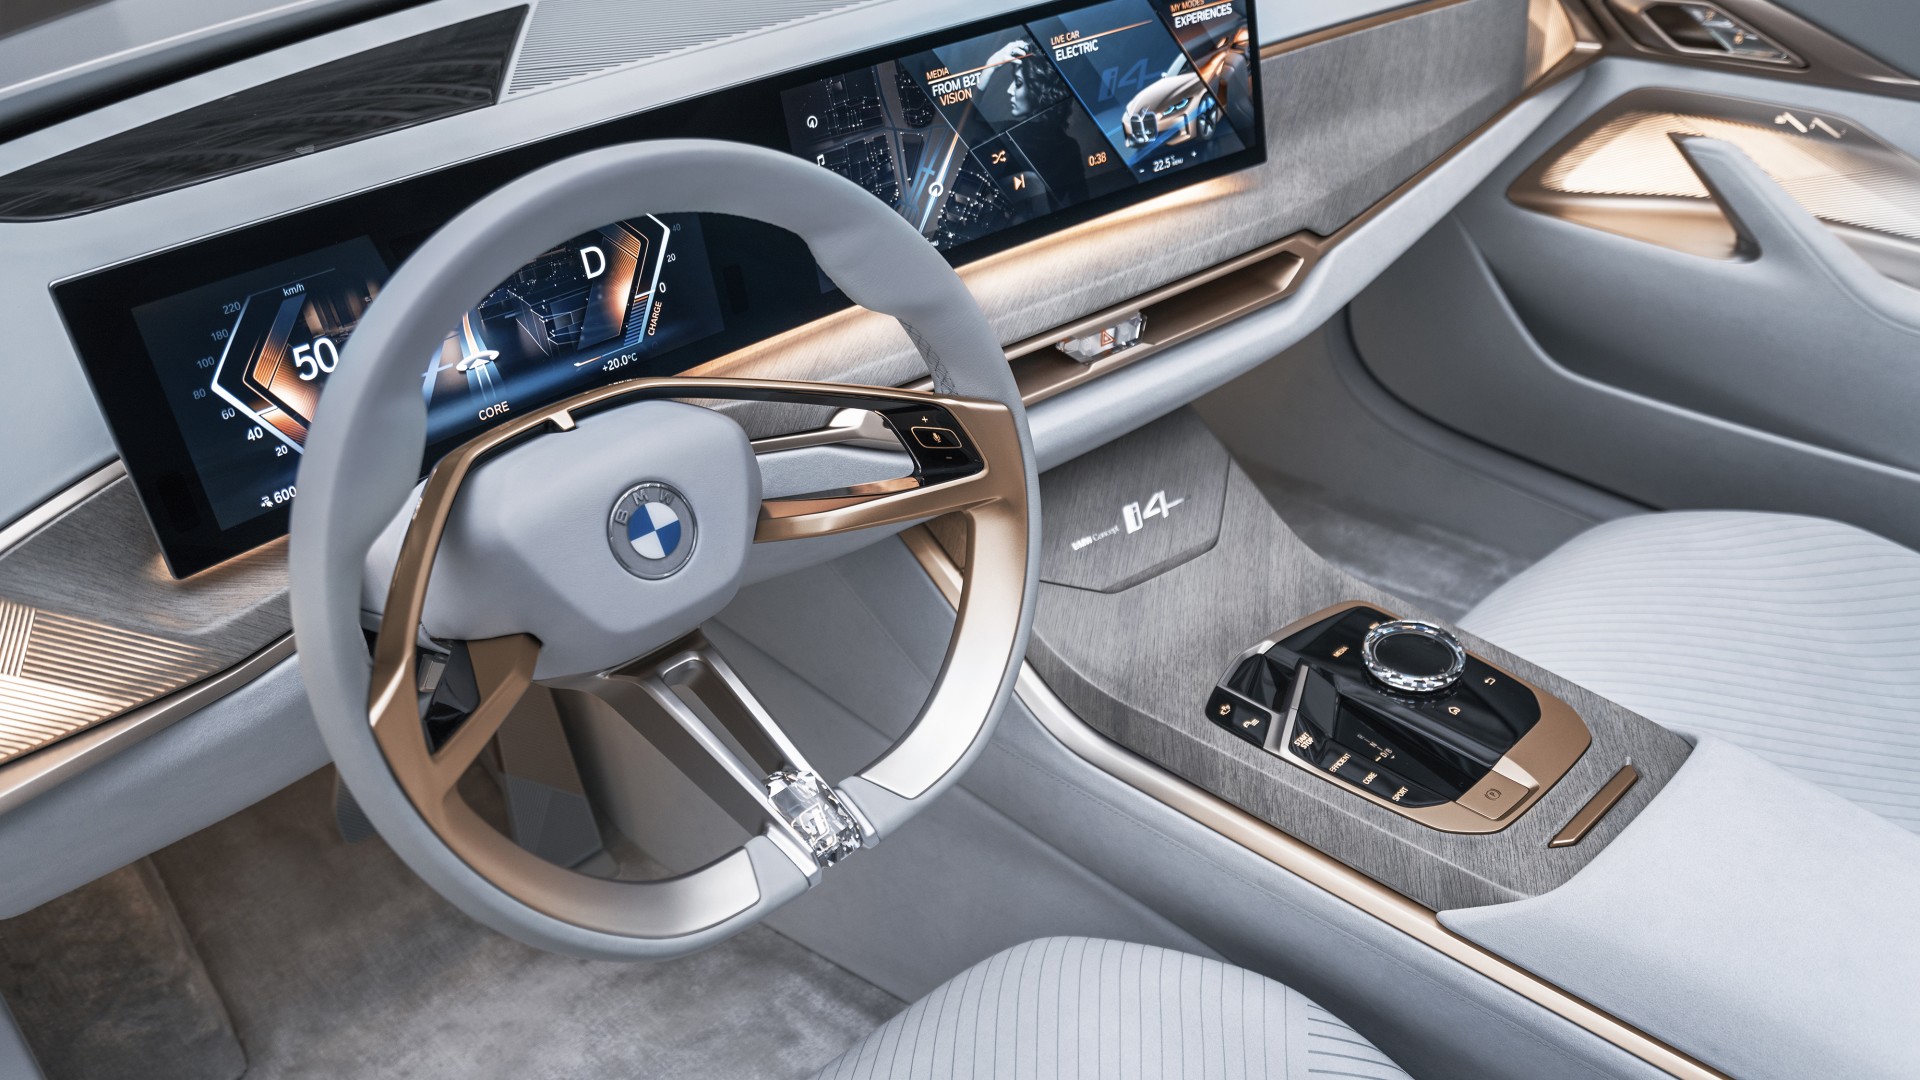 BMW Concept i4 2020 4K Interior Wallpaper | HD Car Wallpapers | ID #14551